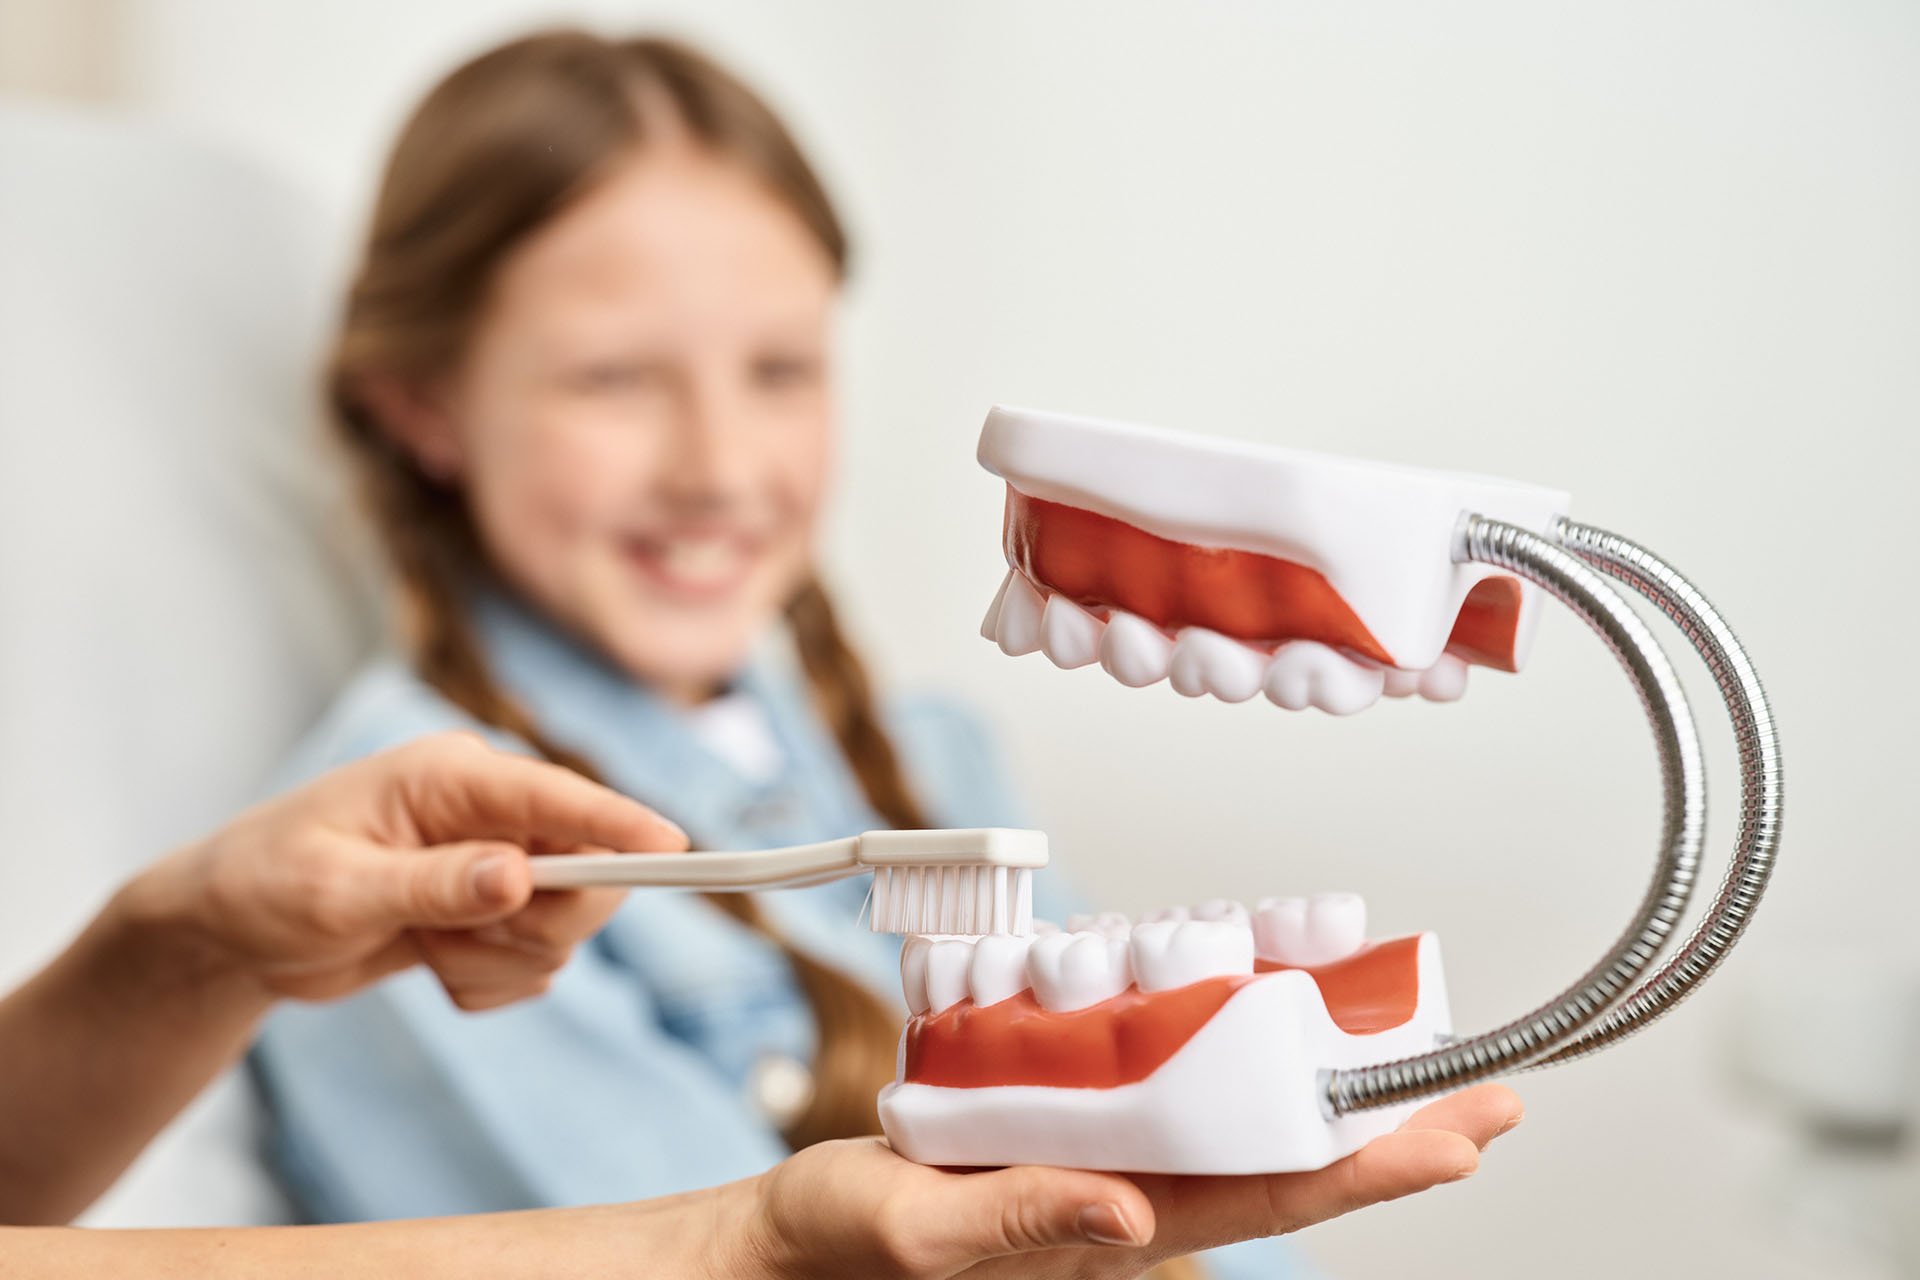 Kind bekommt die richtige Zahnpflege gezeigt